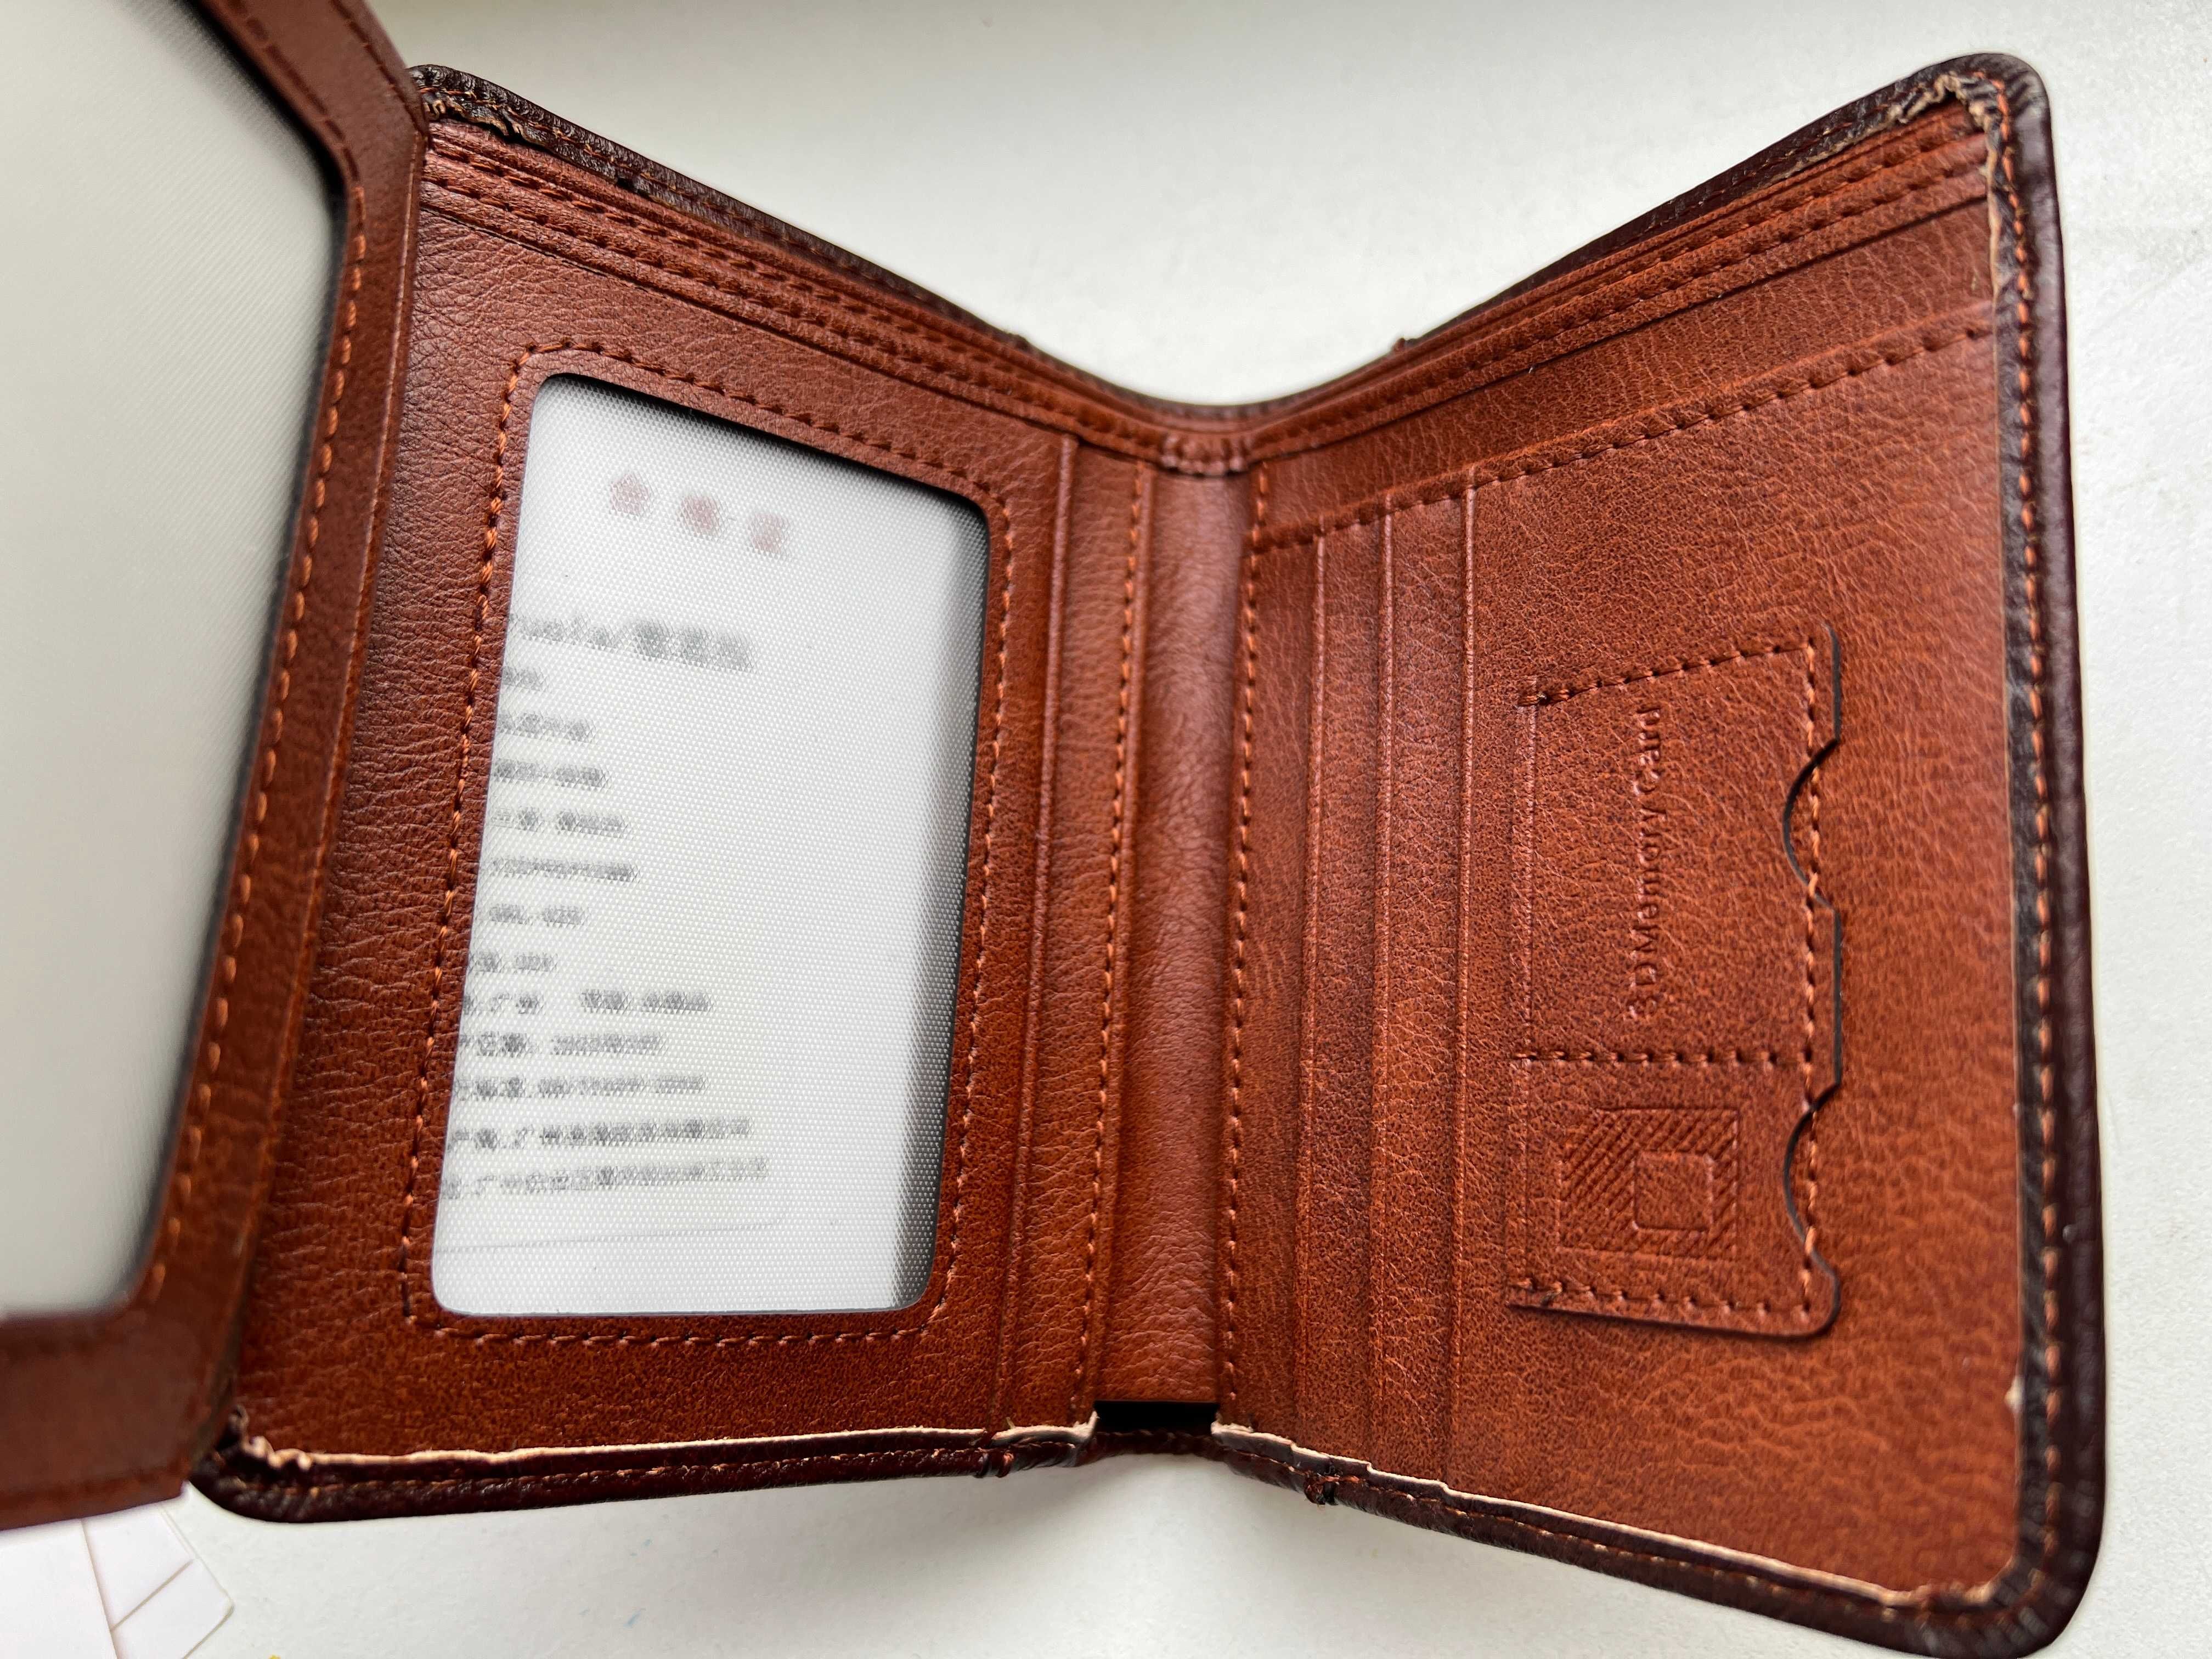 Новий шкіряний гаманець портмоне